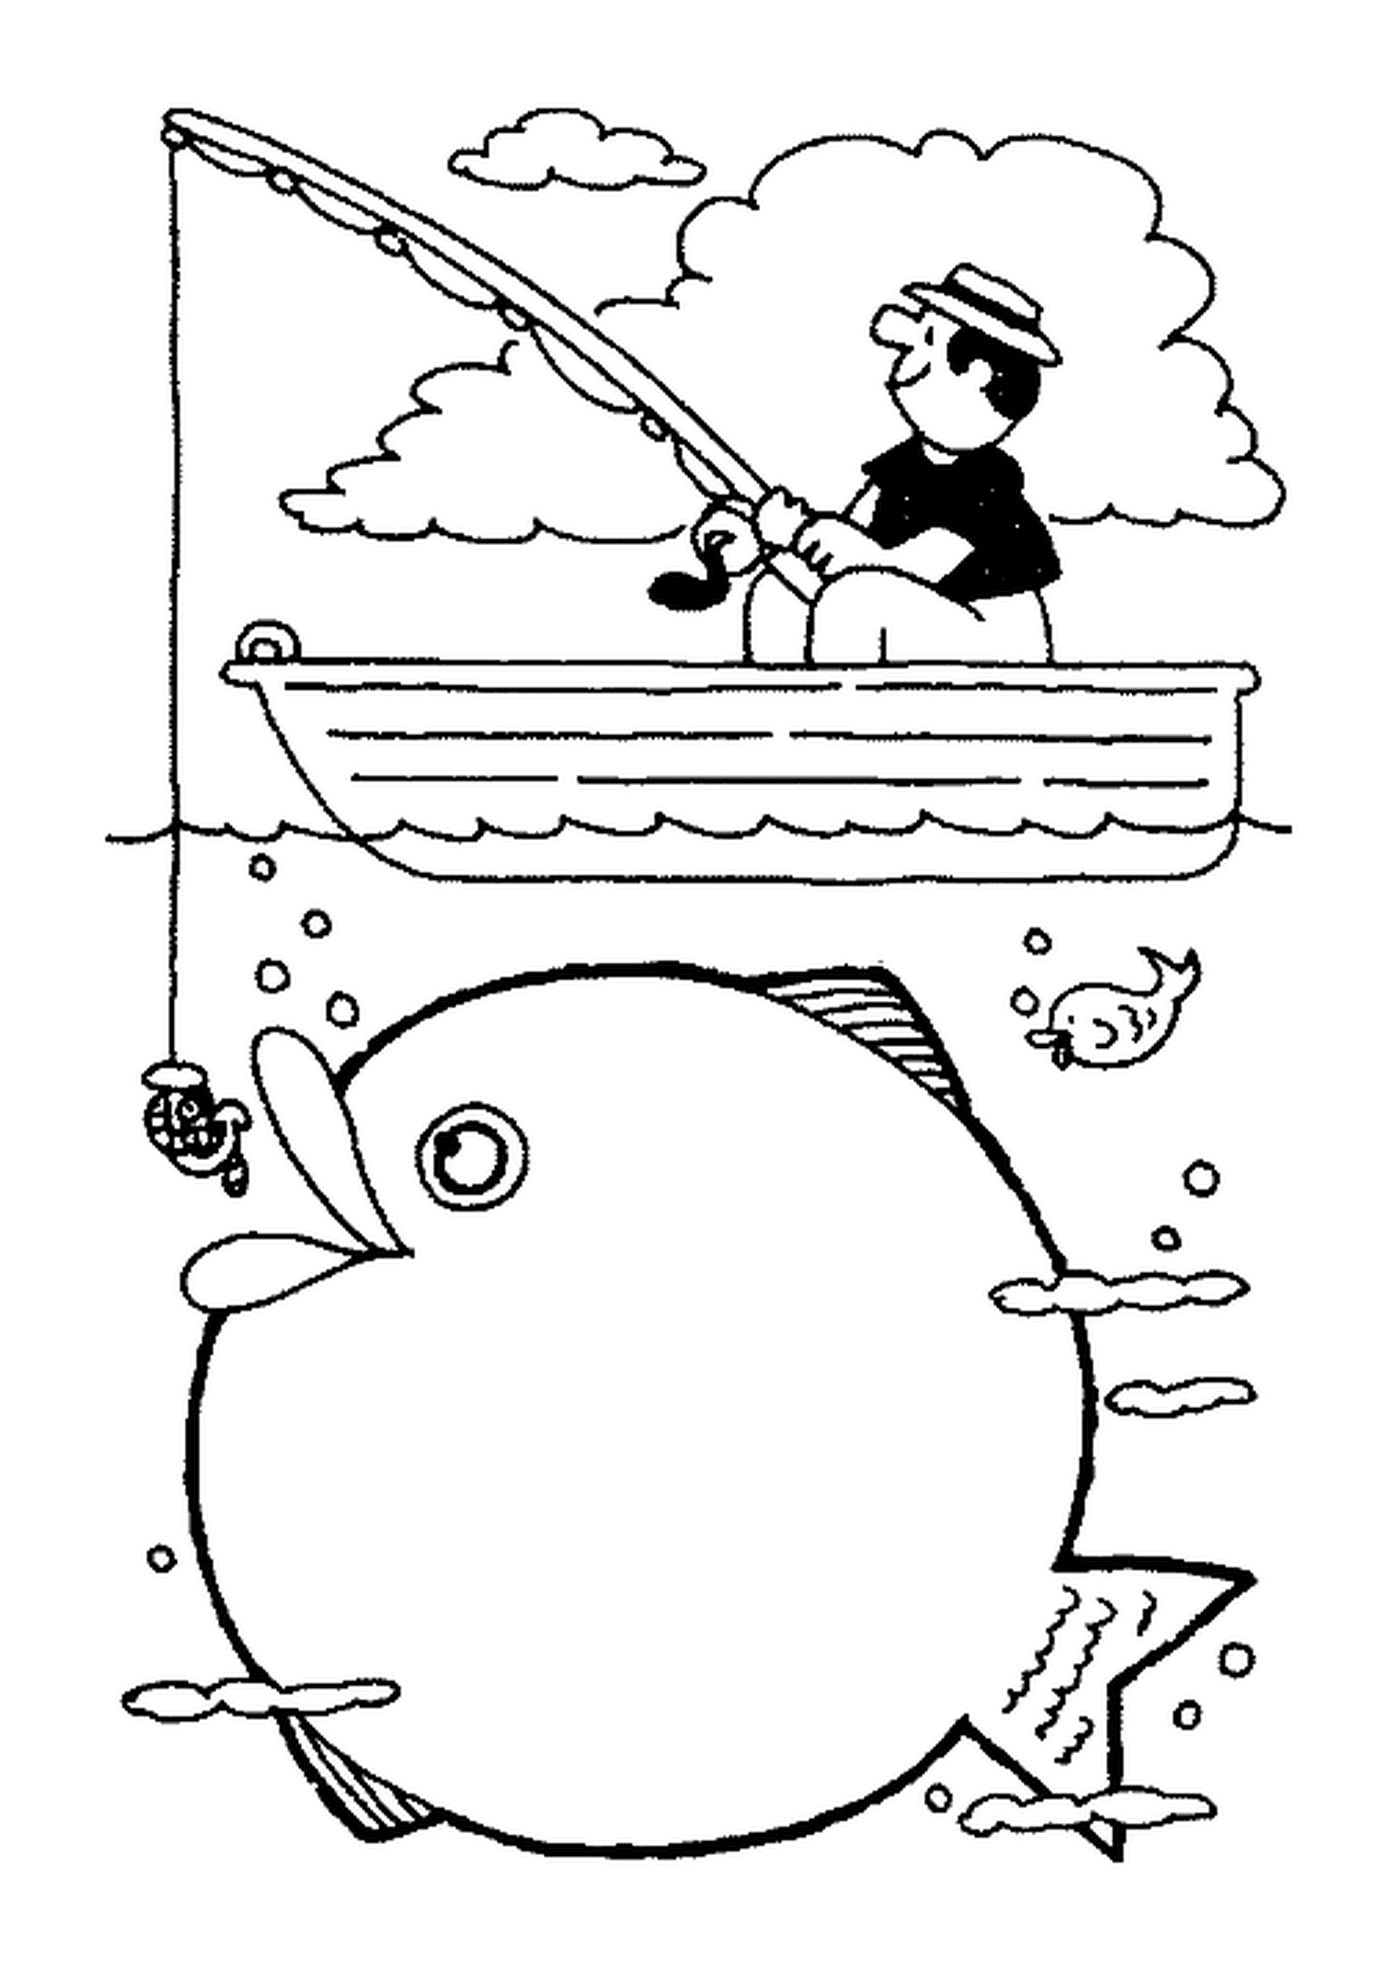  Hombre pescando en un barco 